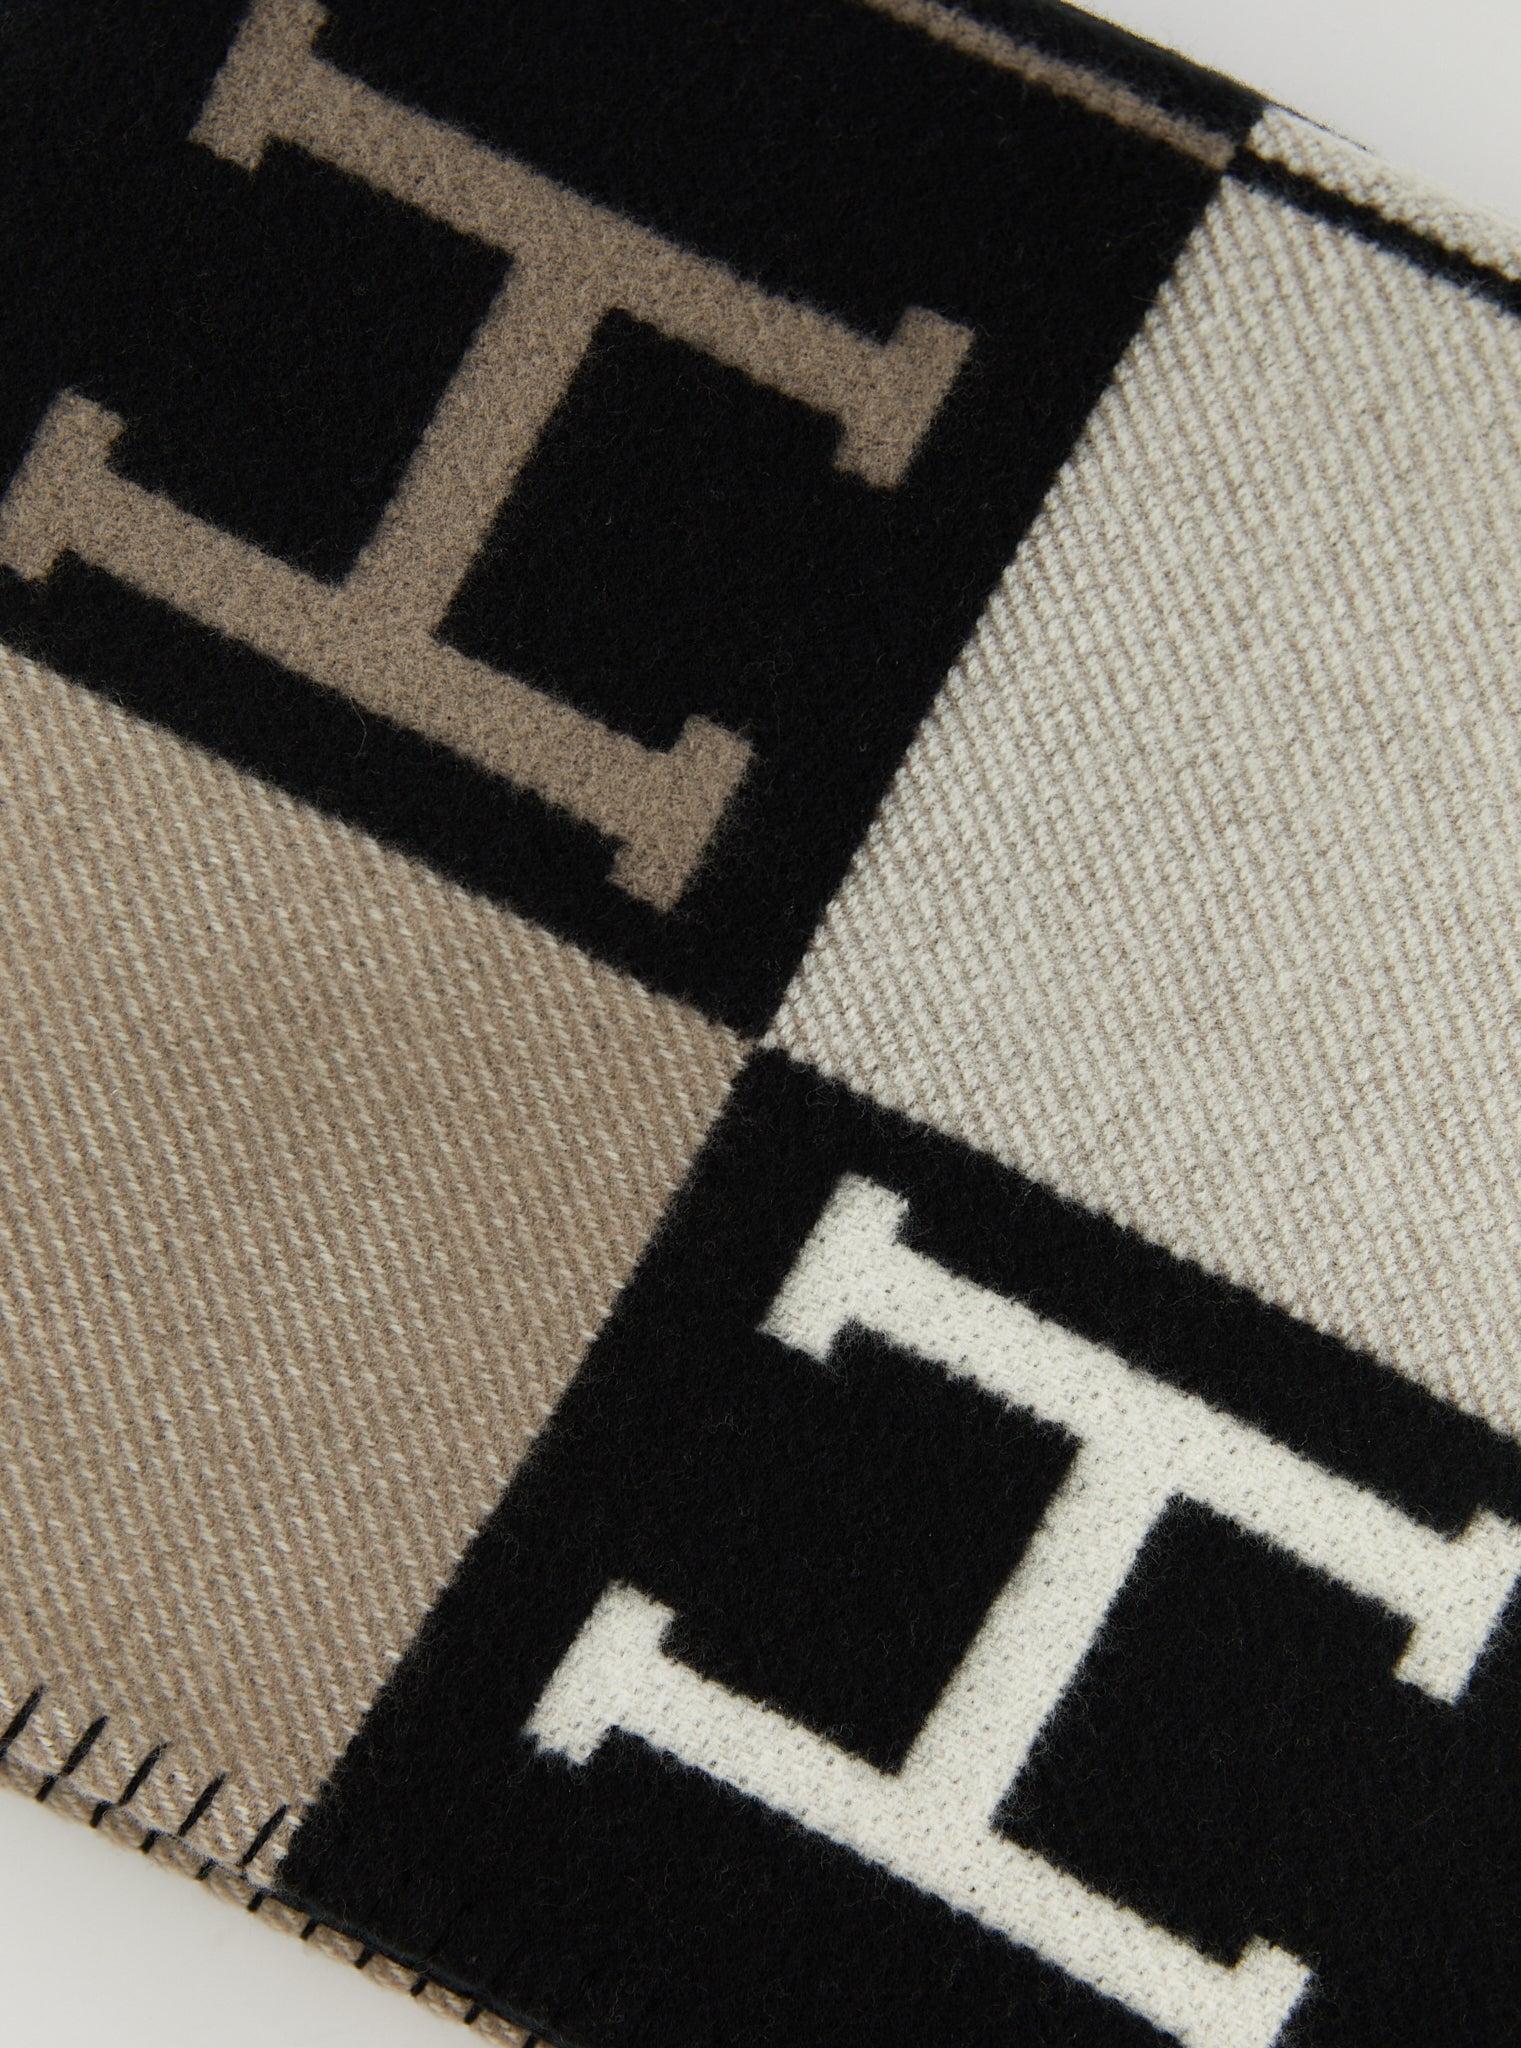 Hermès Avalon III Kuscheldecke in Ecru und Schwarz

Kuscheldecke aus Merinowolle und Kaschmir (90% Merinowolle, 10% Kaschmir)

Hergestellt in Großbritannien

Abmessungen: L 135 x H 170 cm